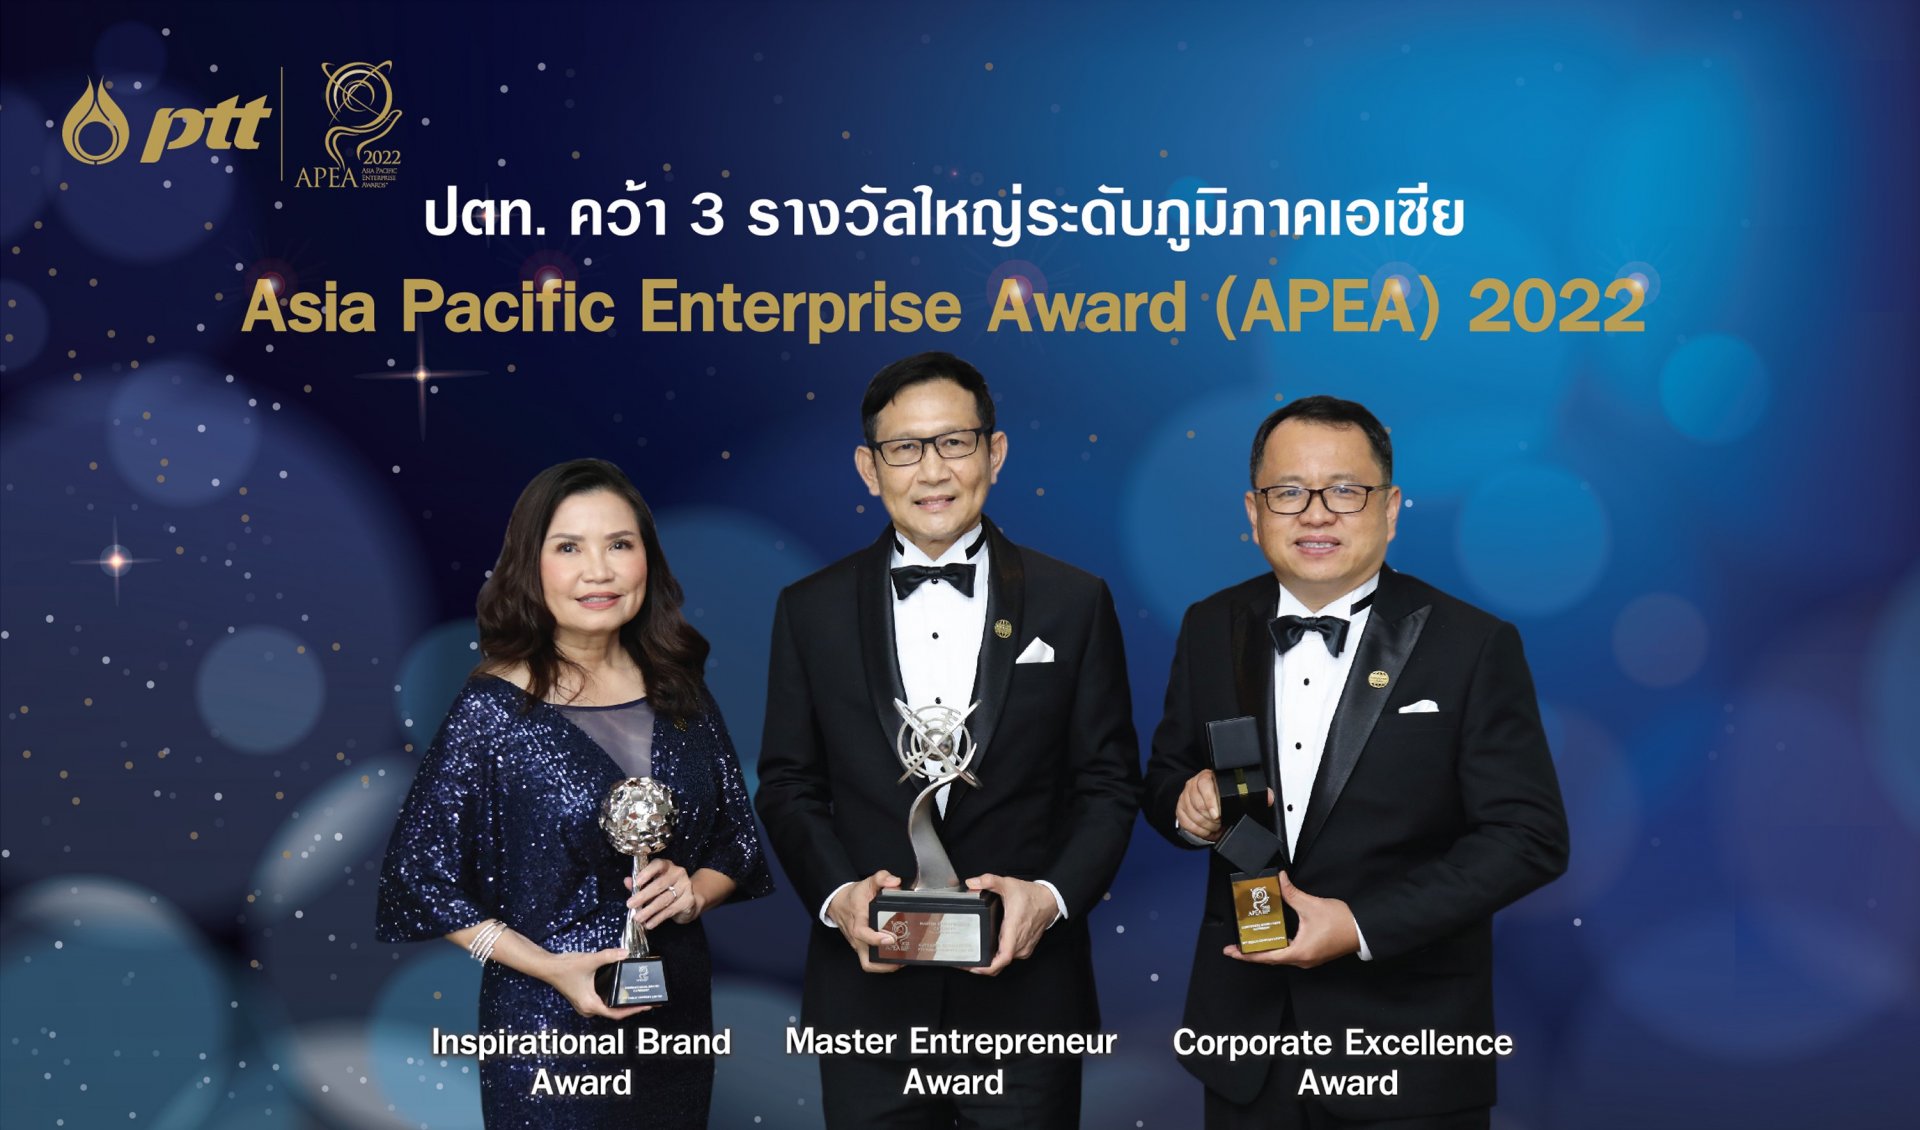 ปตท. คว้า 3 รางวัลใหญ่ระดับเอเชีย Asia Pacific Enterprise Awards 2022 